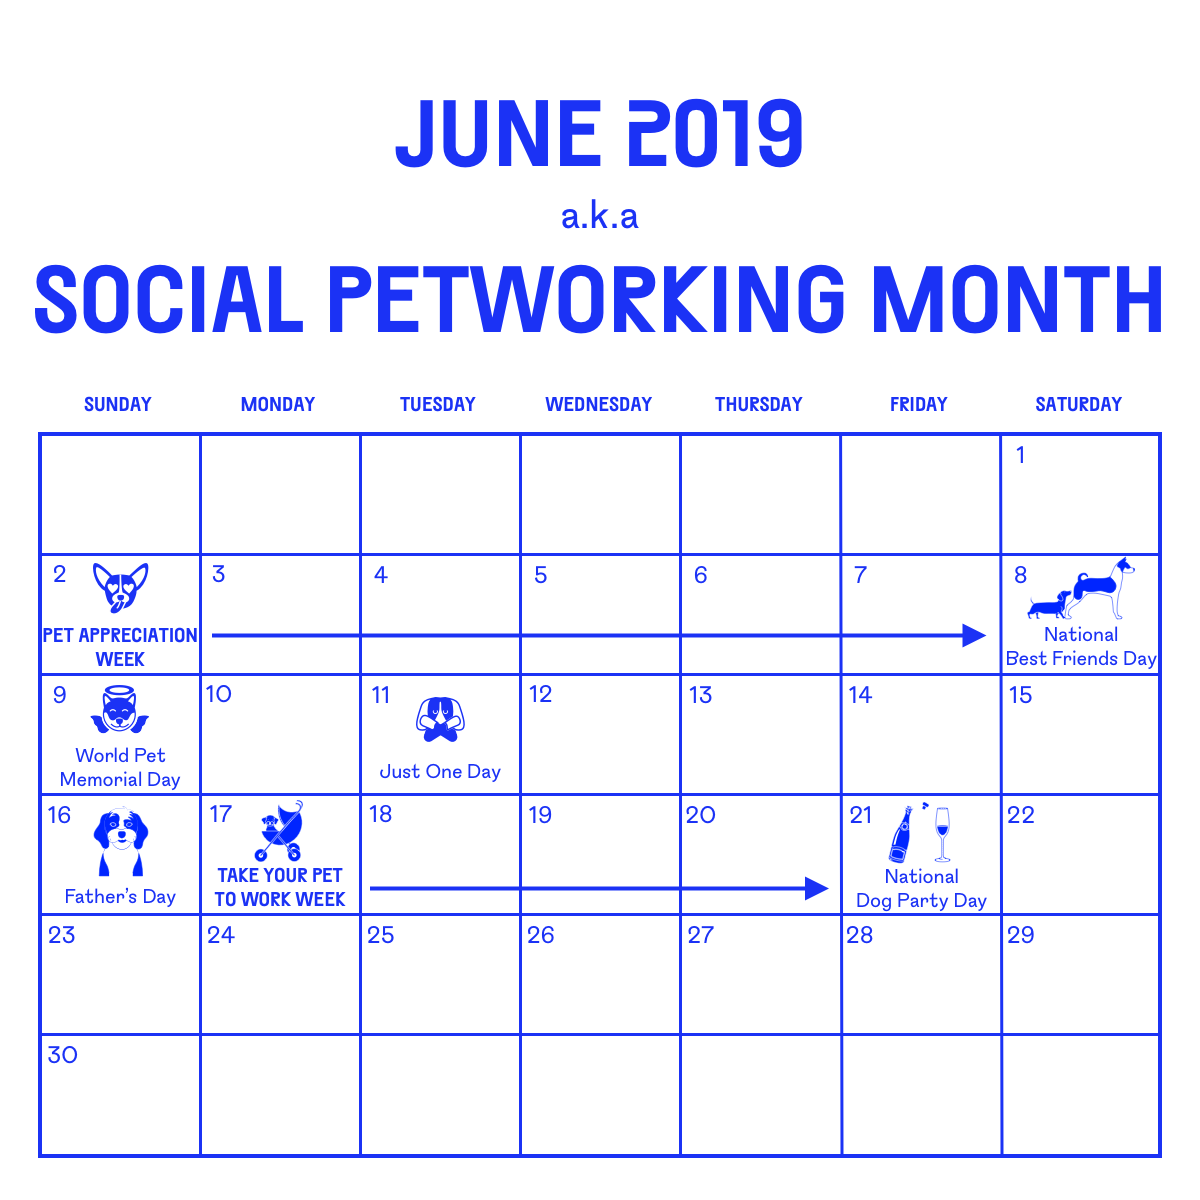 June 2019 aka Social Petworking Month